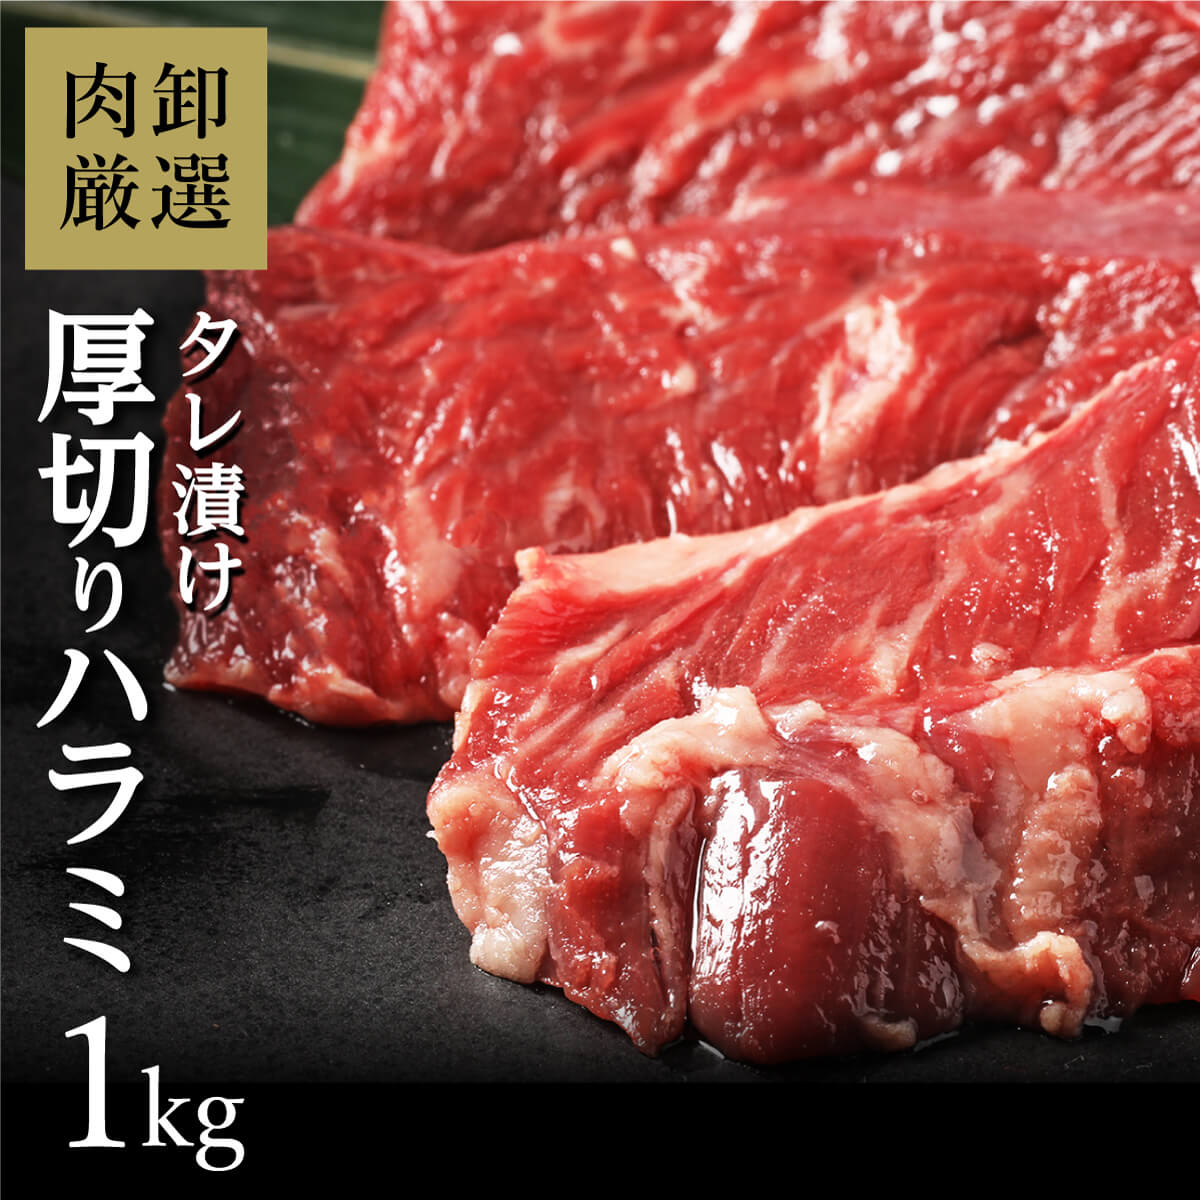 ハラミ 1kg はらみ バーベキュー 肉 bbq 焼き肉 焼肉 味付き タレ漬け 牛肉 ラクラク厚切りはらみ1kg